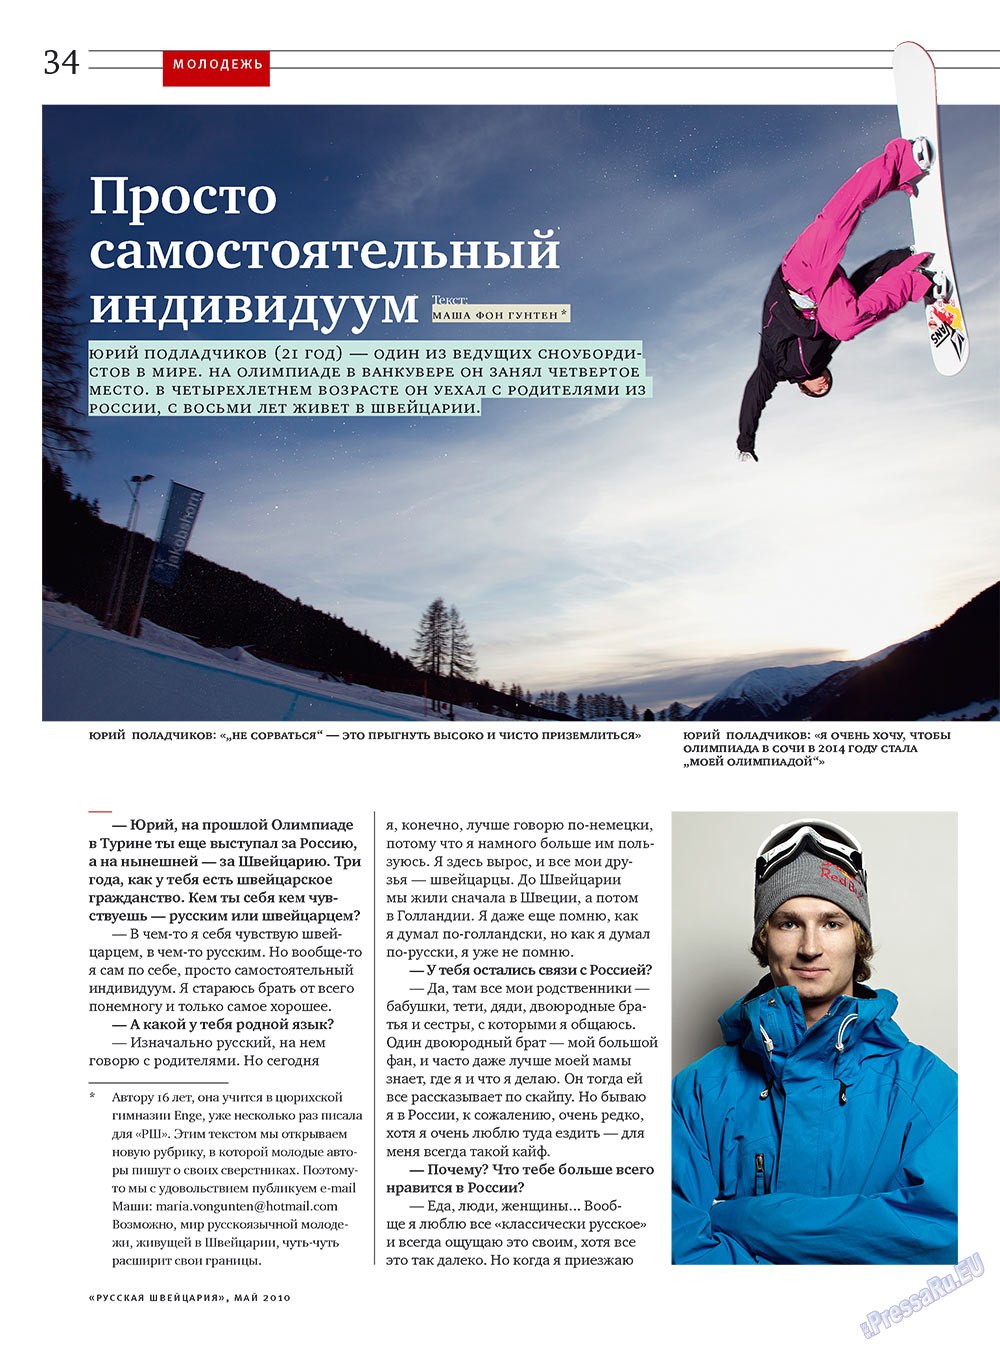 Русская Швейцария, журнал. 2010 №4 стр.34